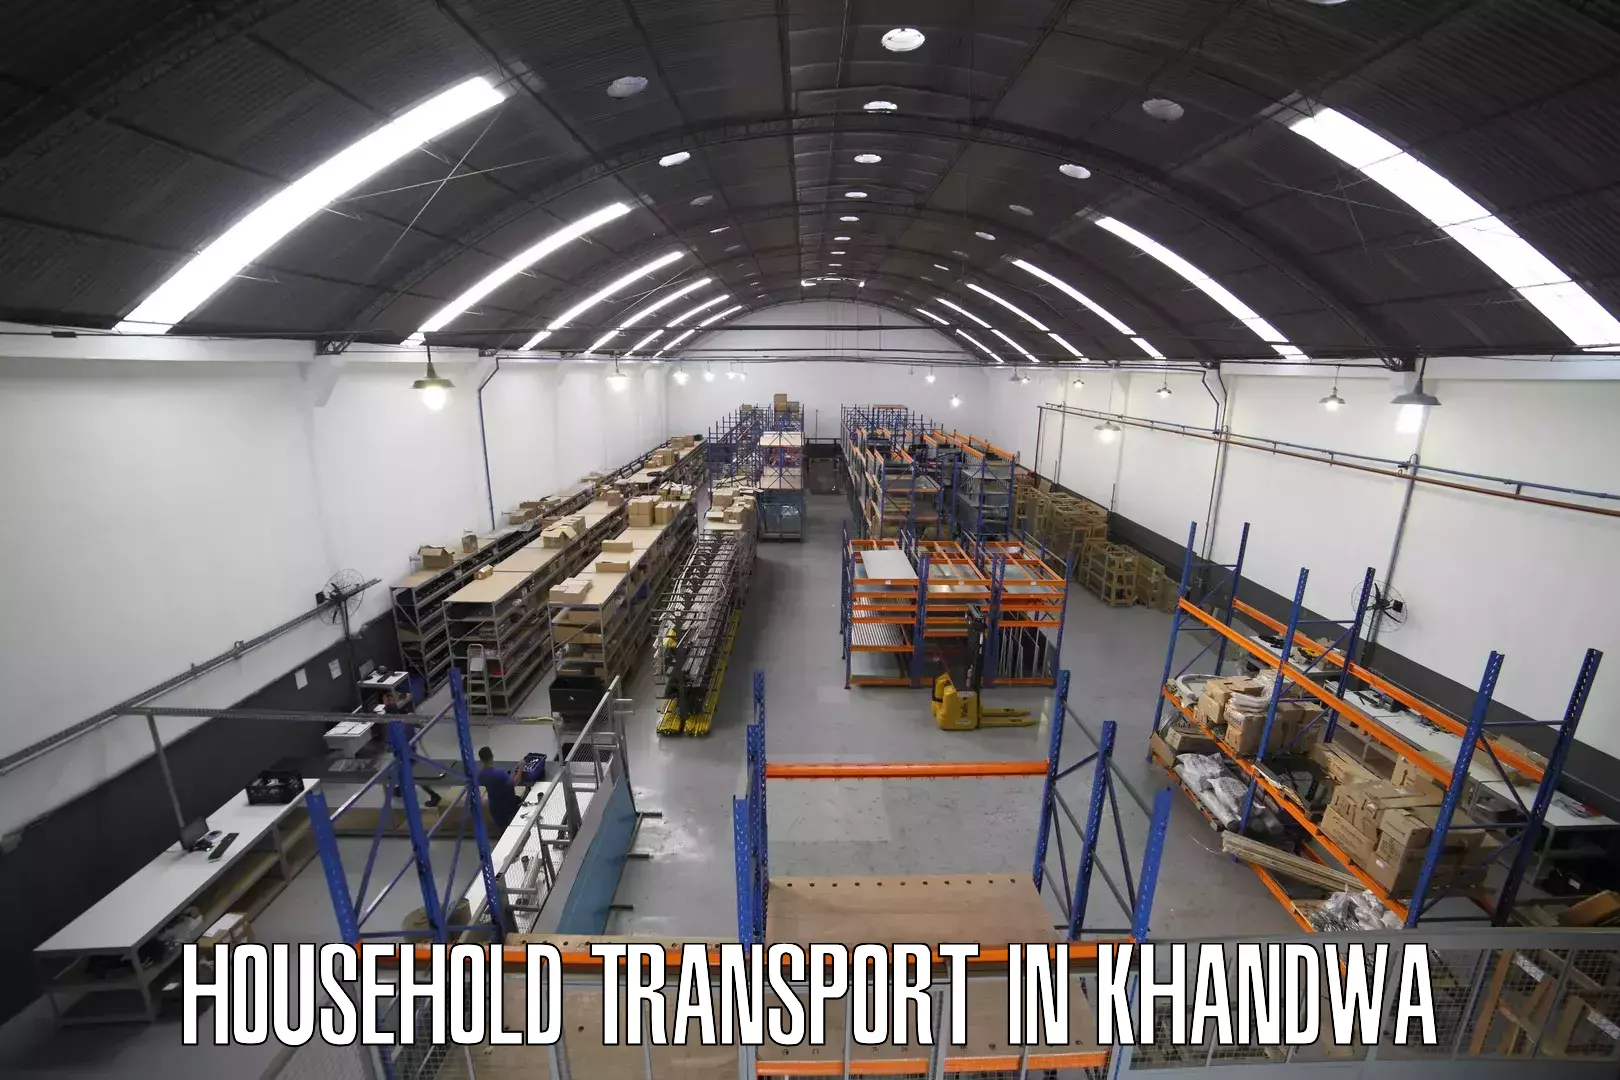 Online household goods transport in Khandwa